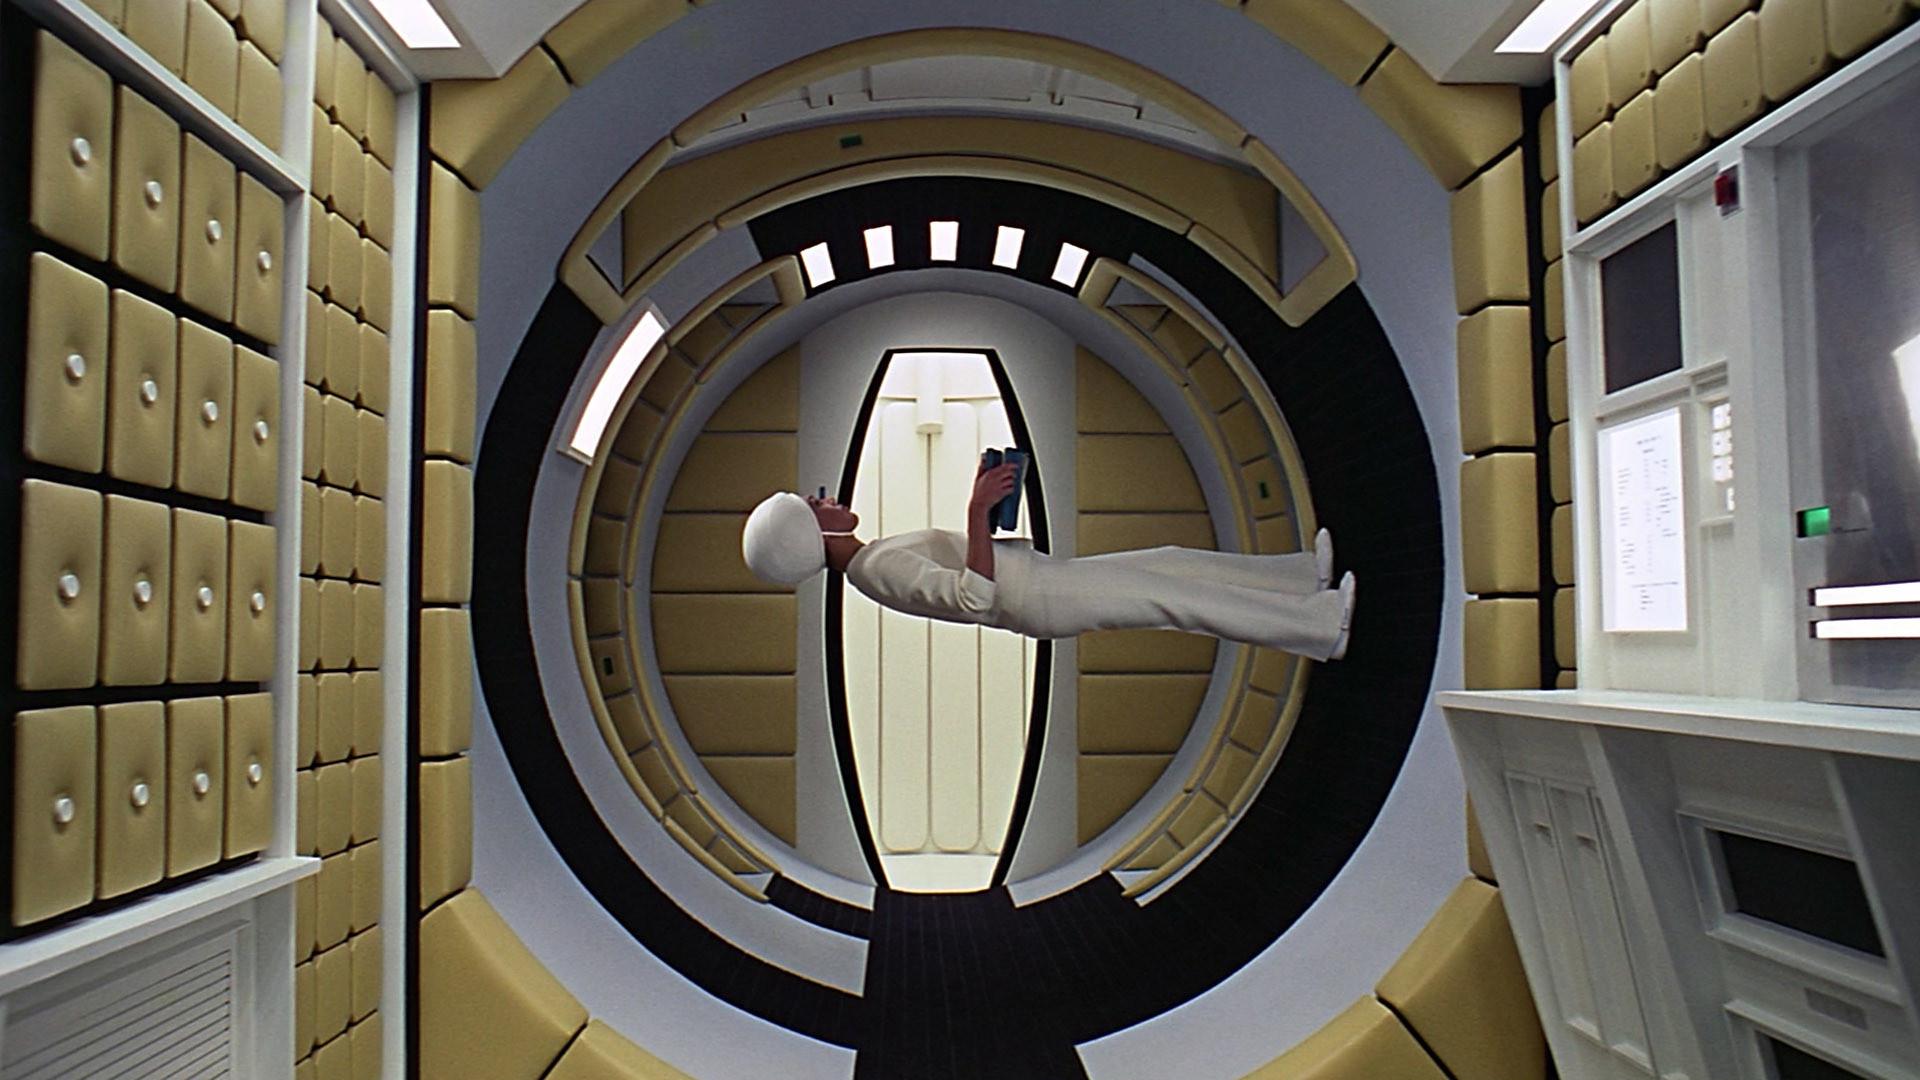 2001- Odisea En El Espacio - 2001 A Space Odyssey , HD Wallpaper & Backgrounds